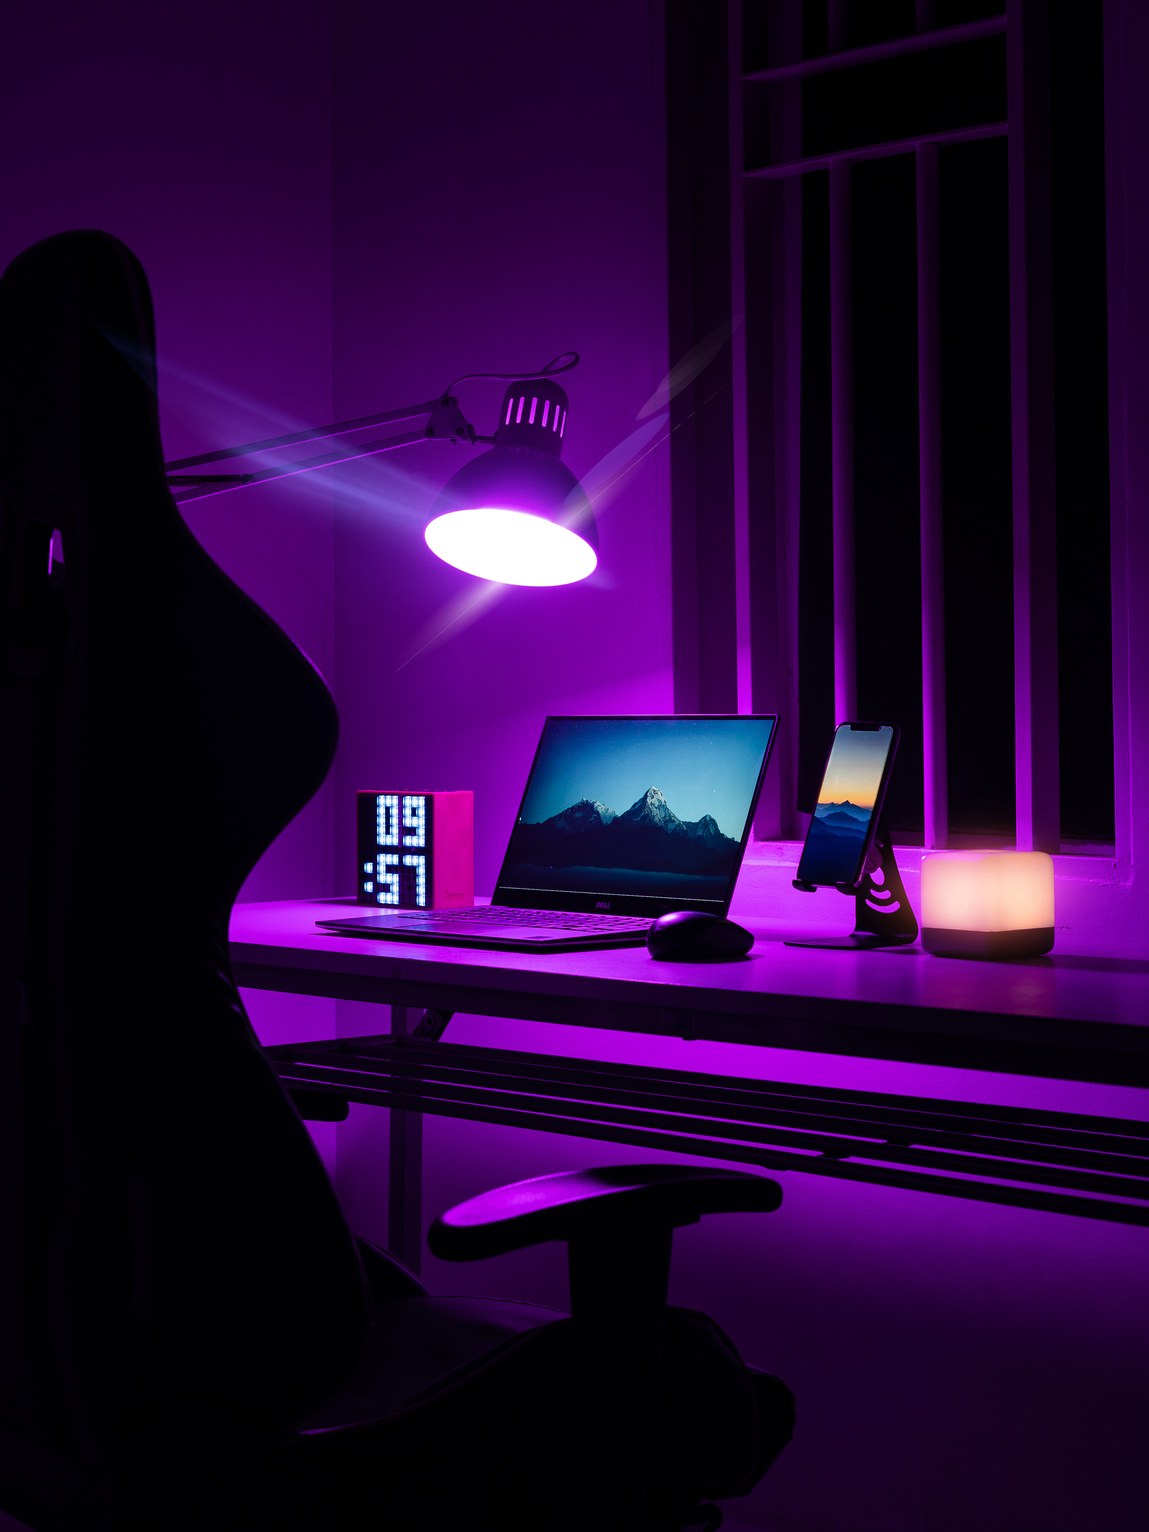 Laptop on Desk in Purple Room